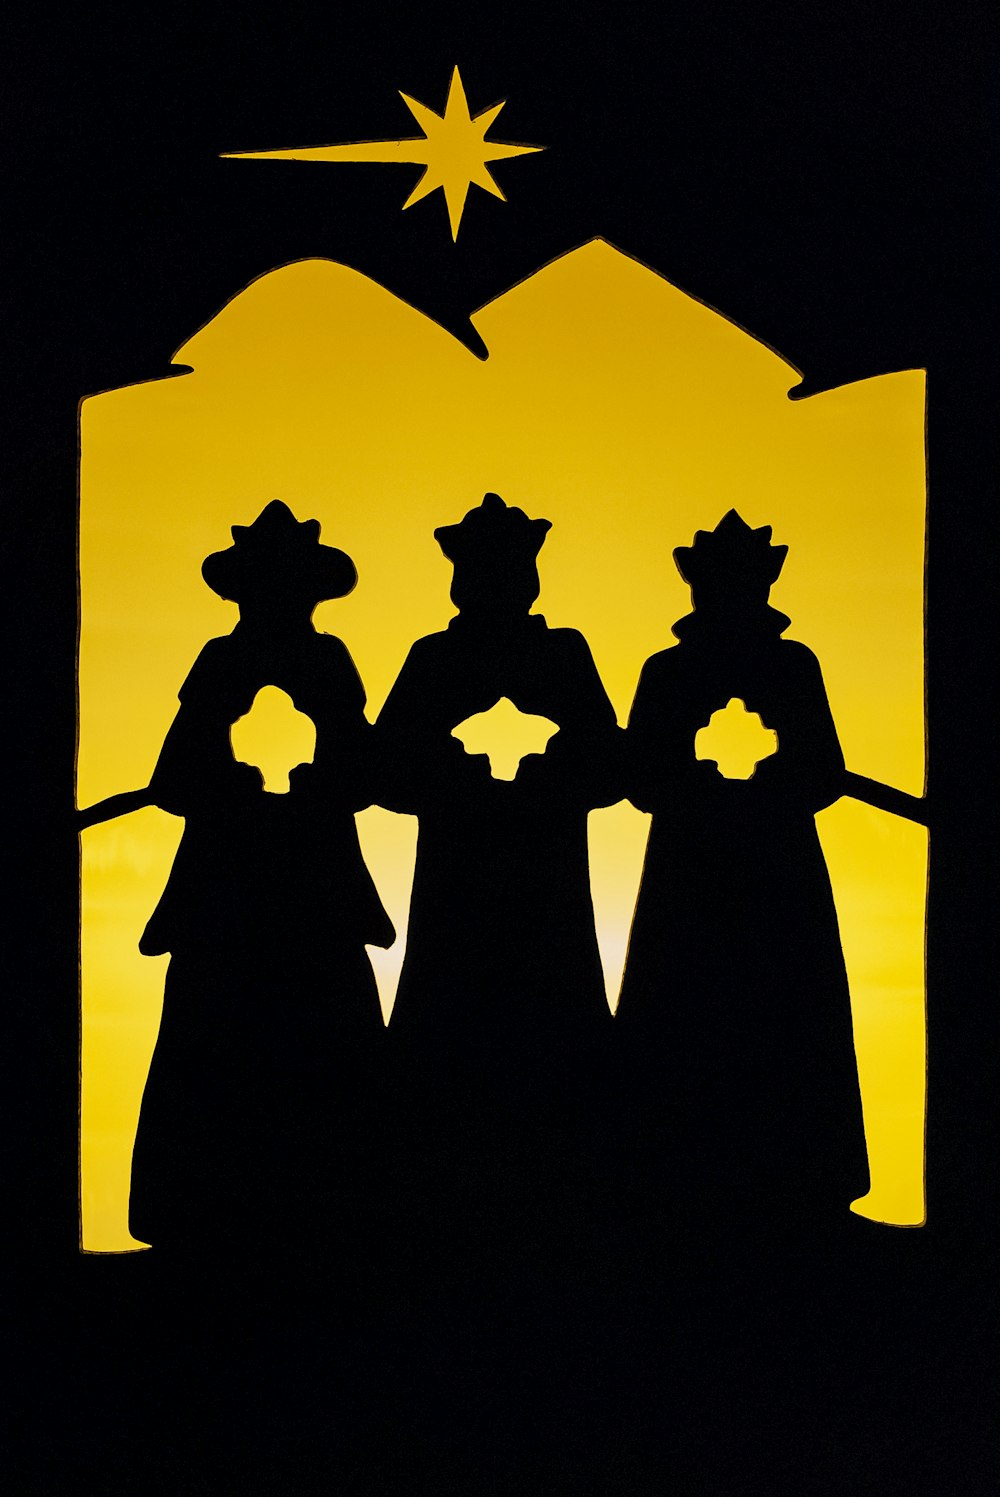 Una silueta de tres personas de pie frente a una estrella